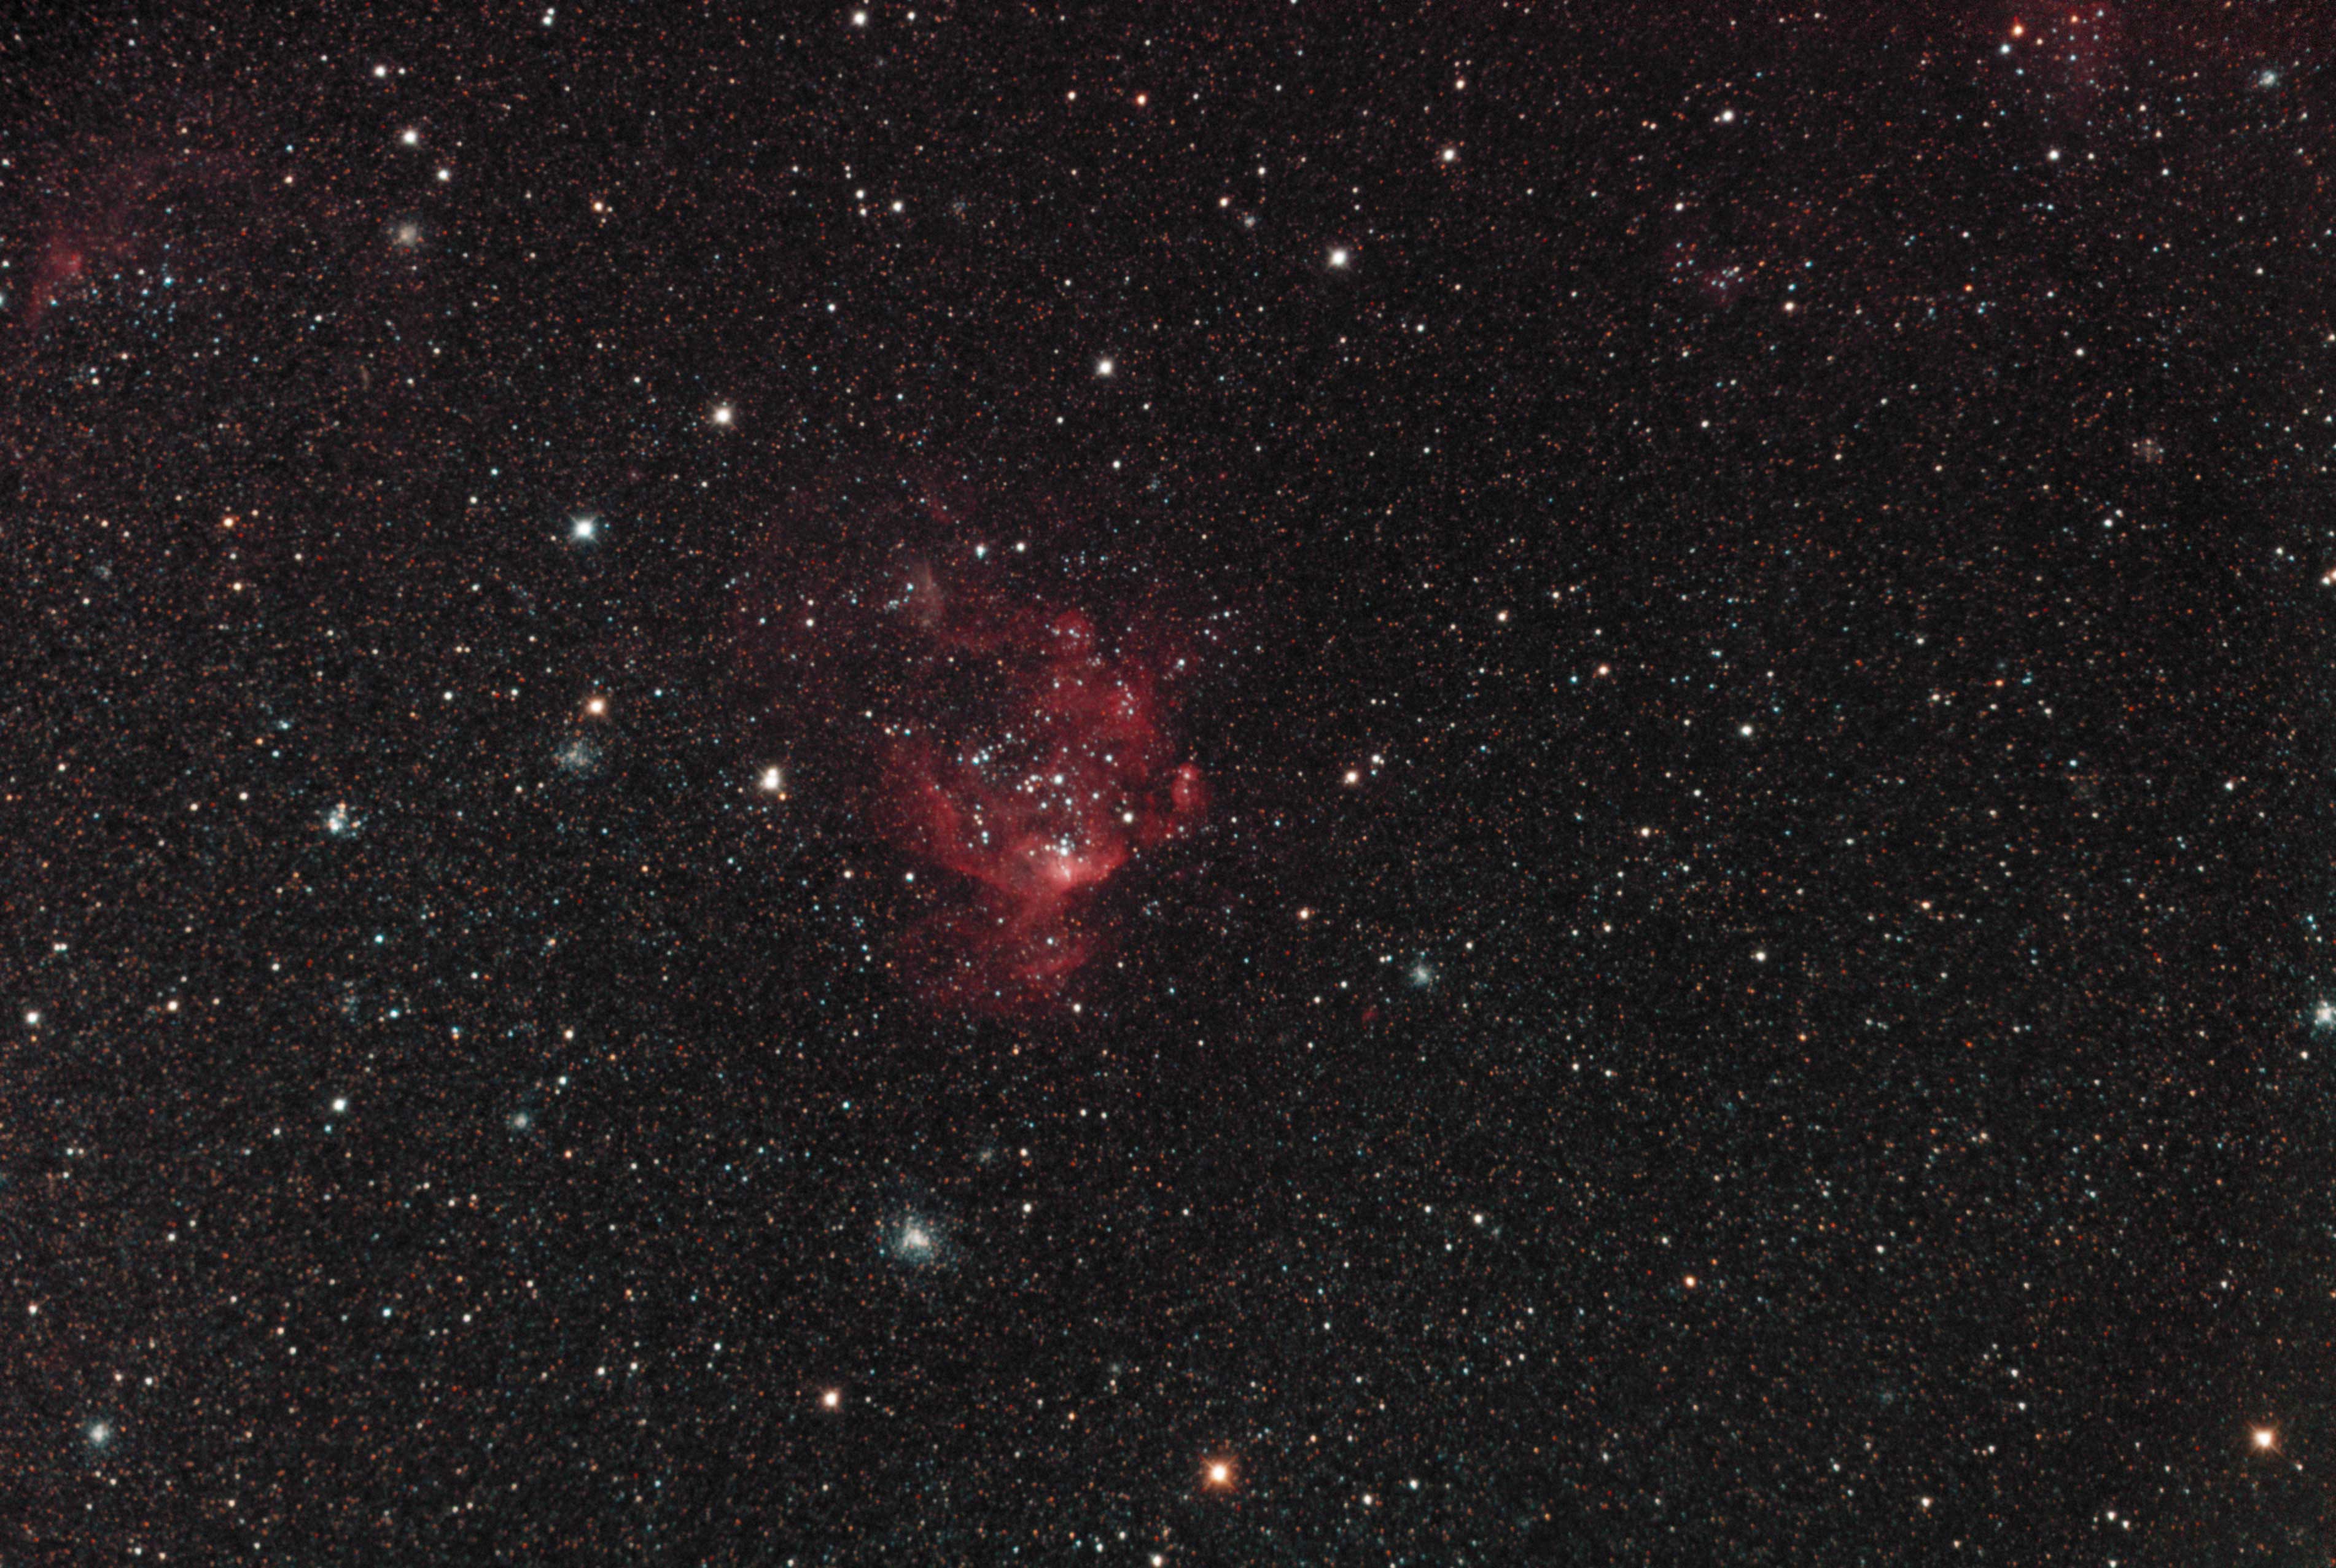 Henize 206 / NGC 2018